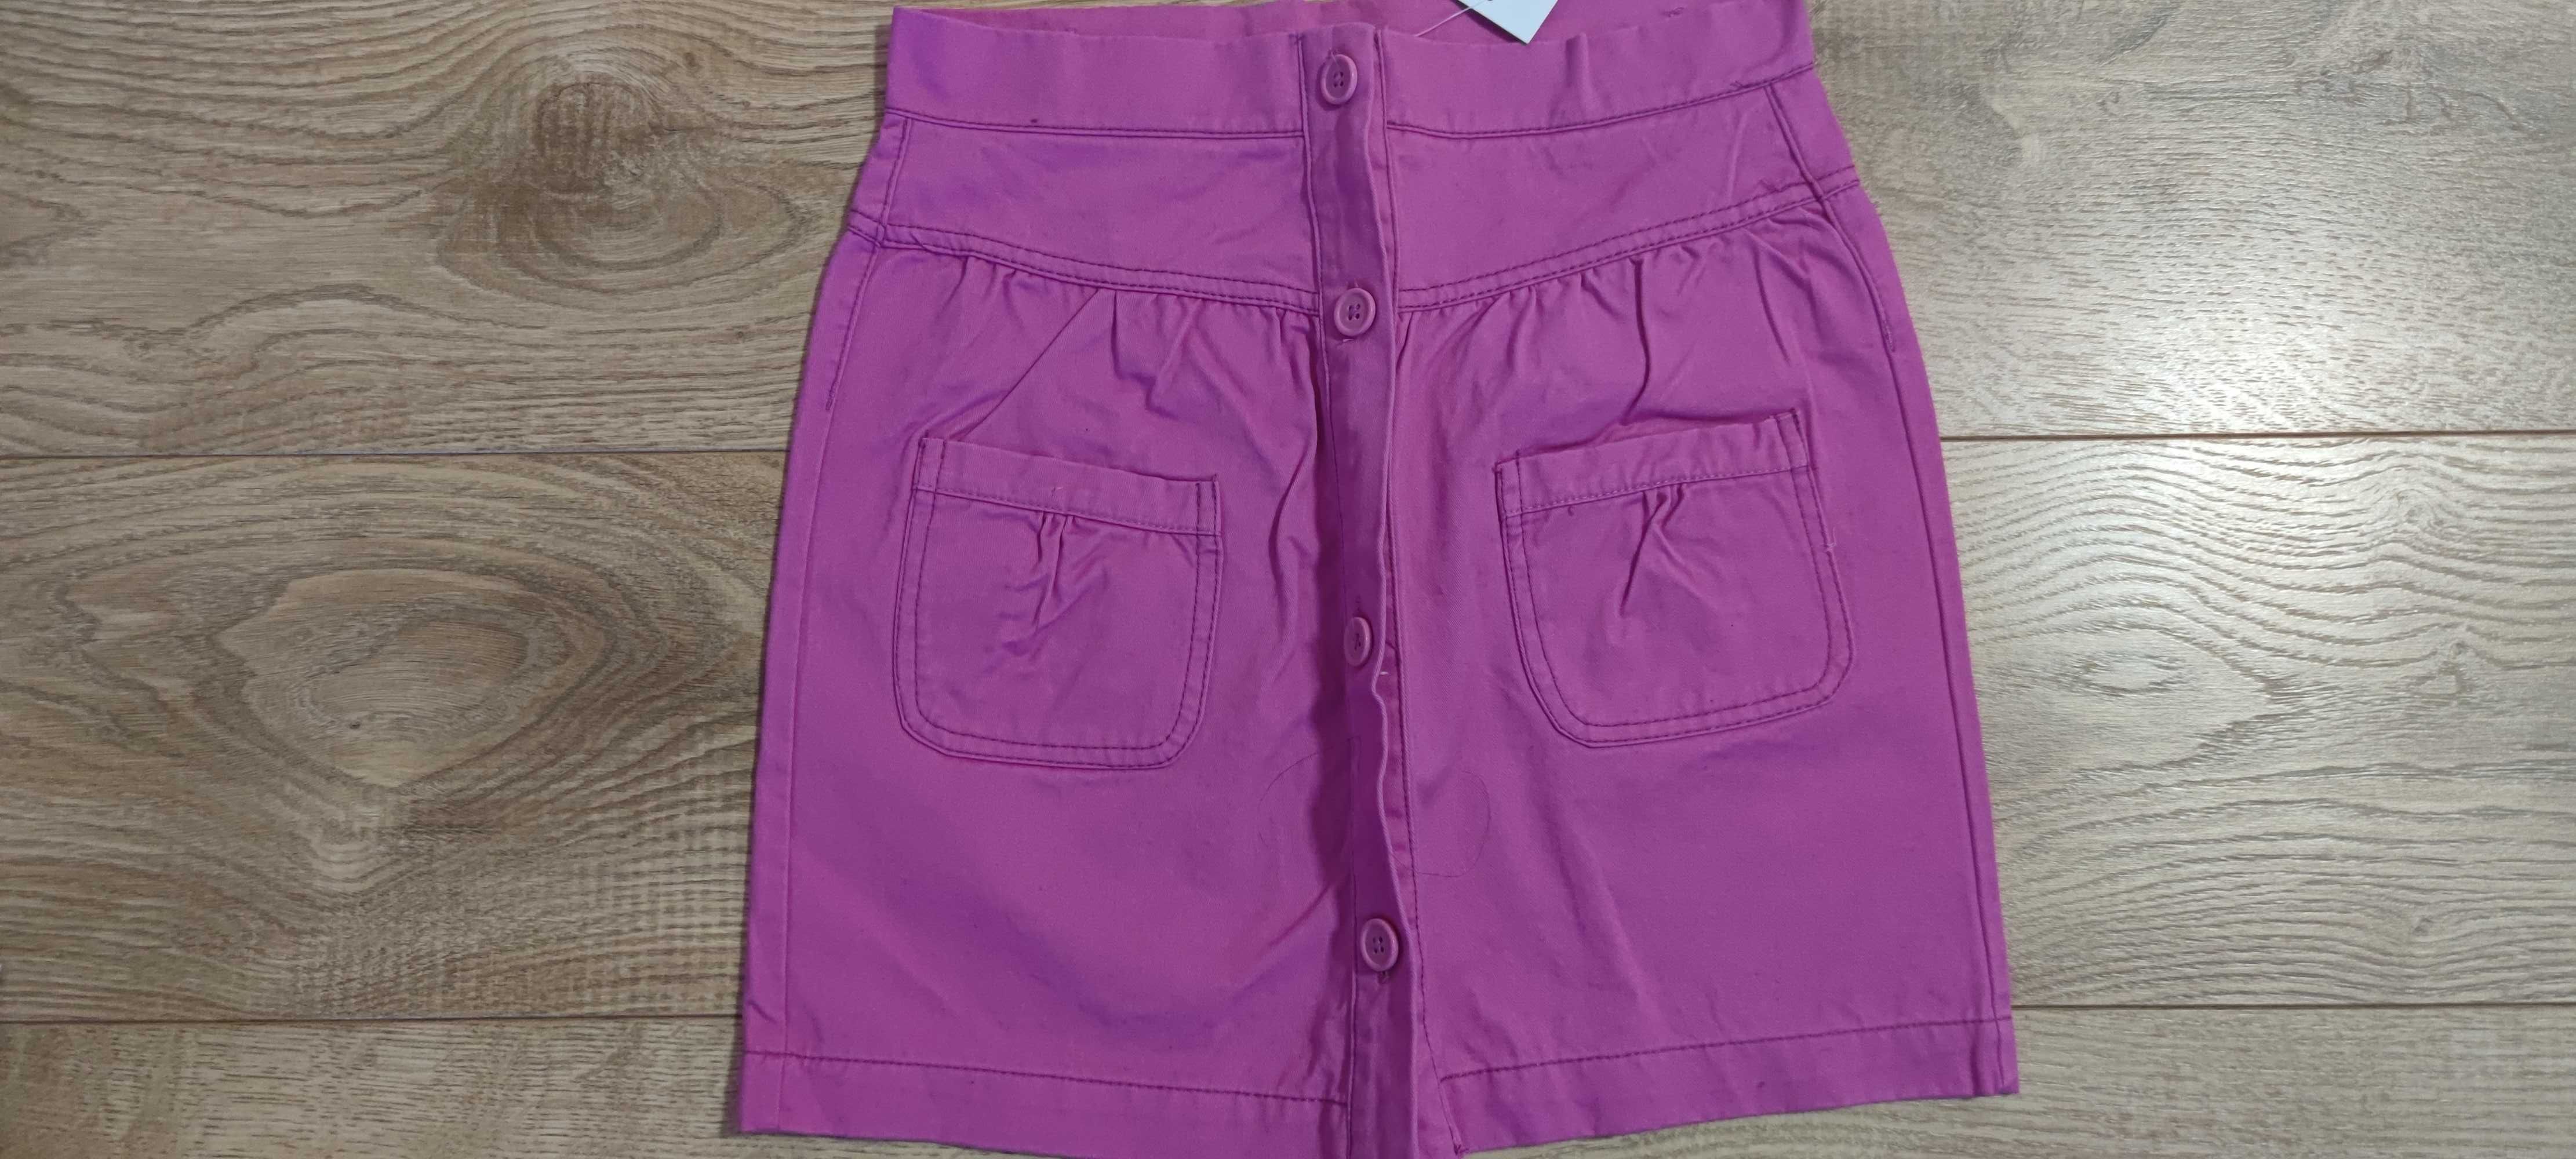 Nowa Smyk 140 spódniczka spódnica dla dziewczynki